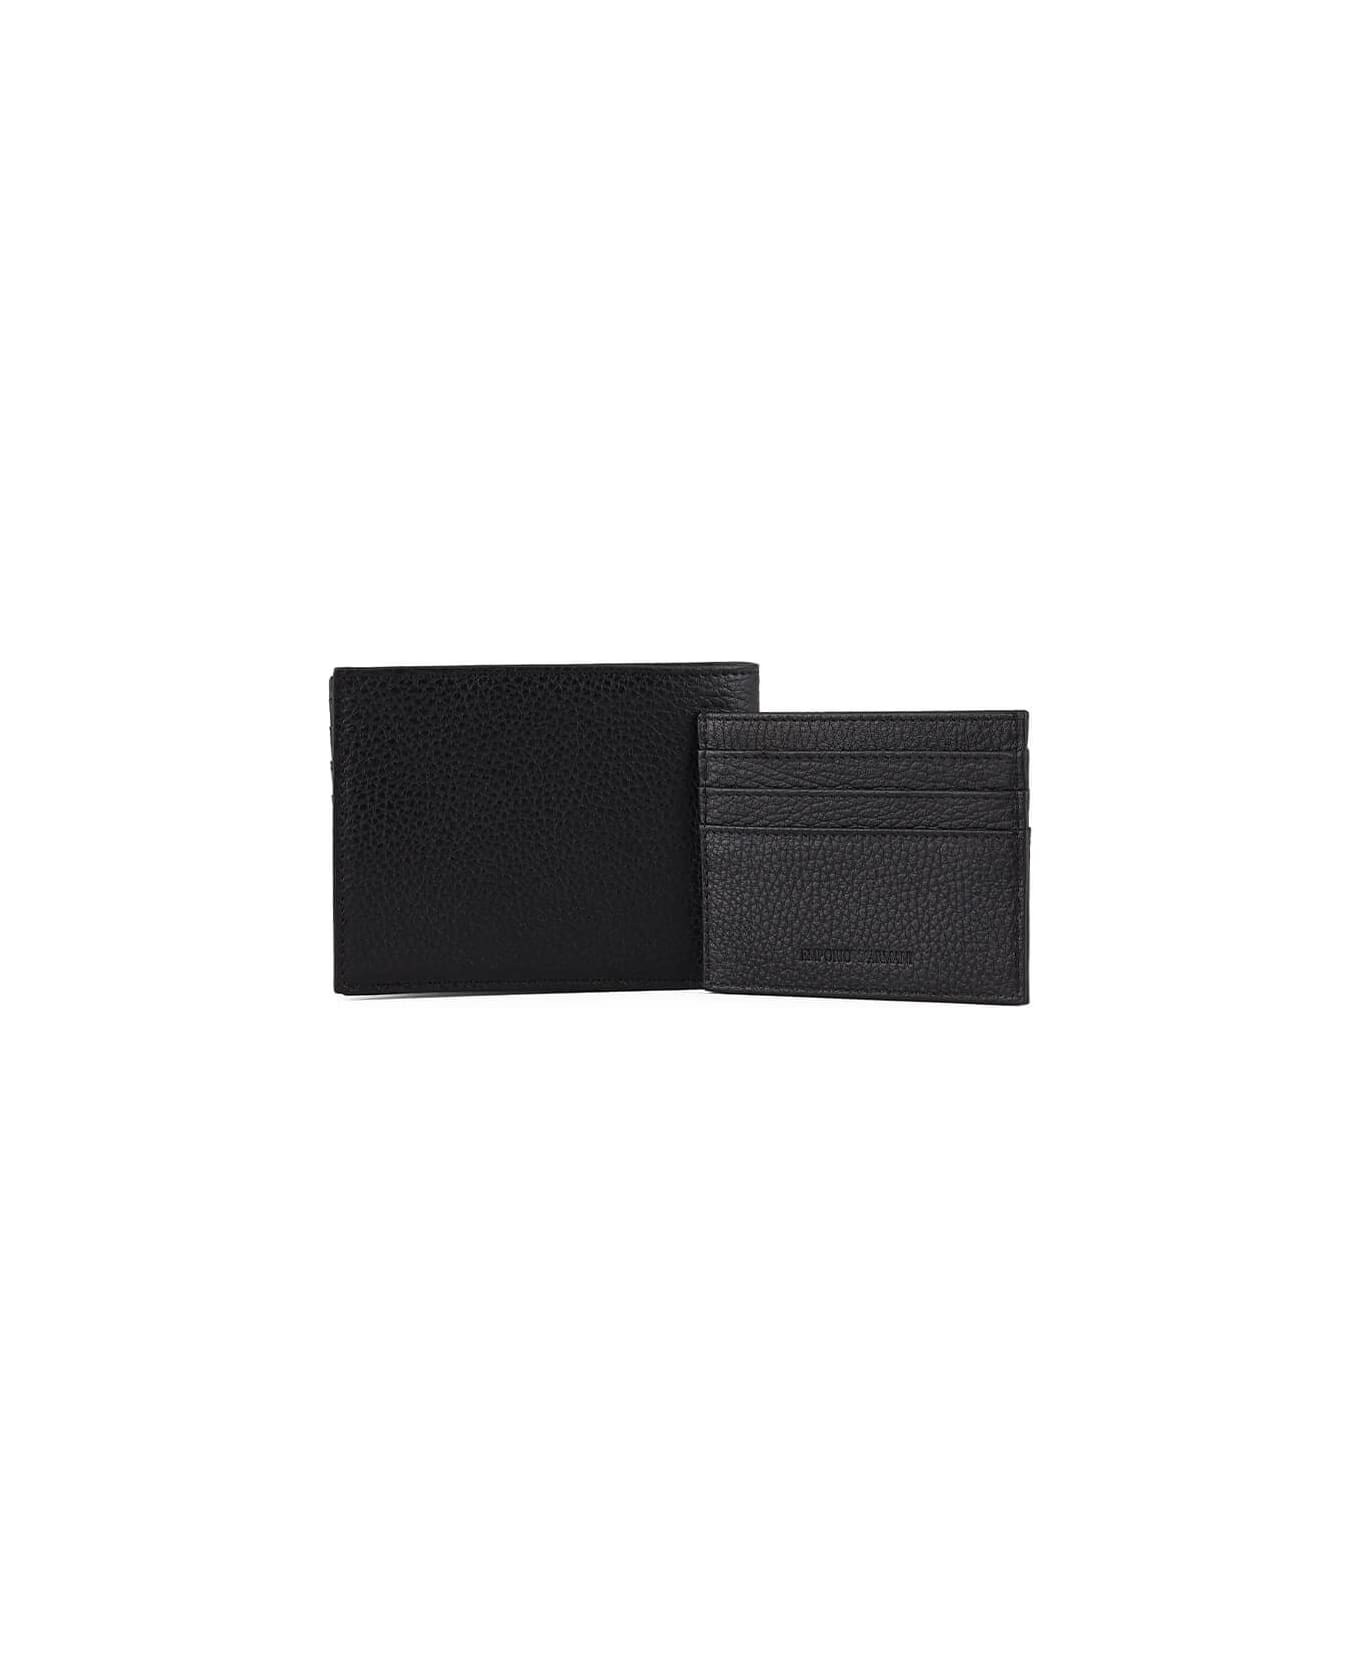 Emporio Armani Black Wallet+card Holder Set - Nero 財布